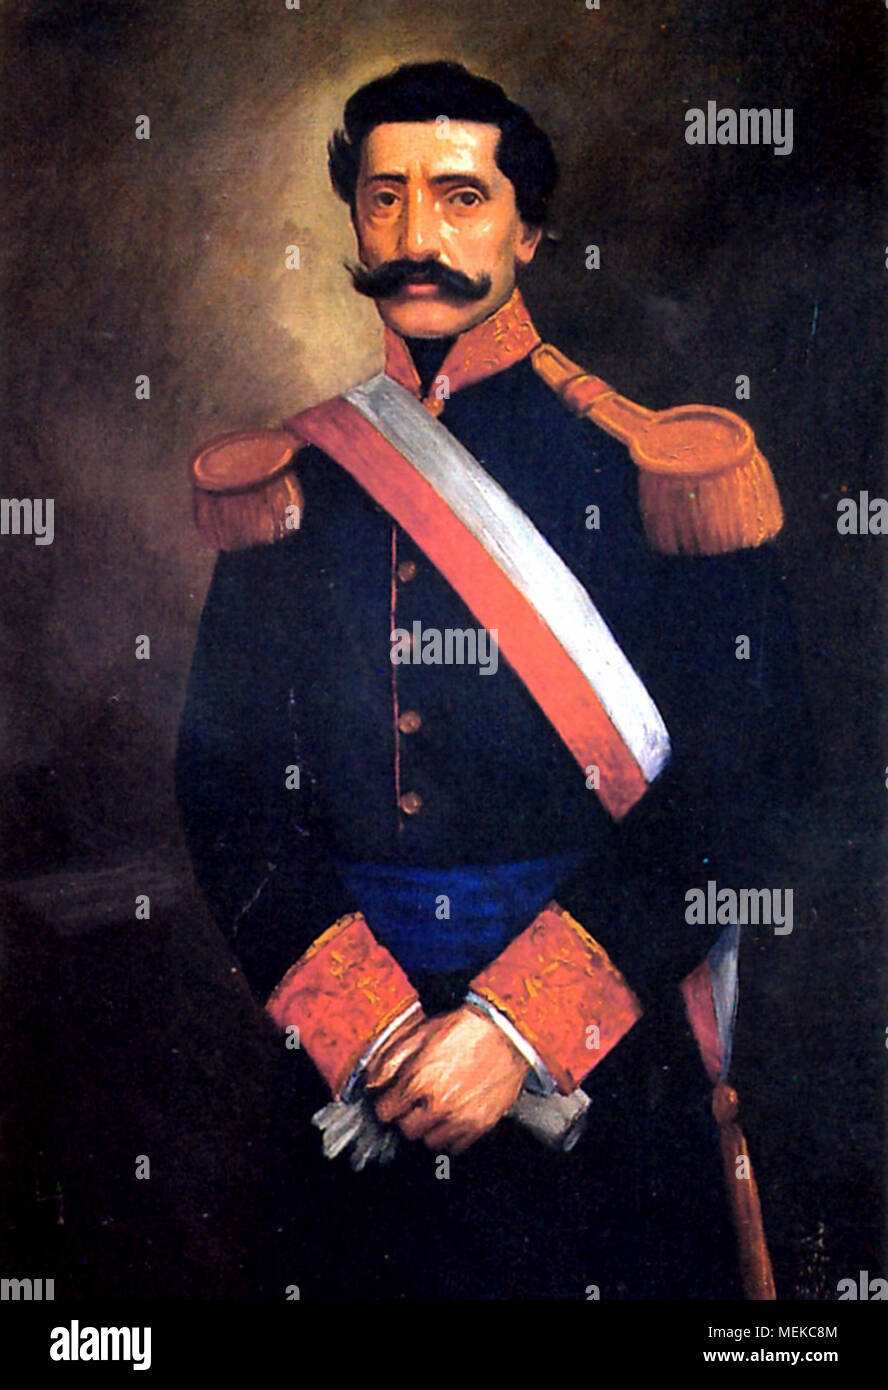 Mariano Herencia Zevallos (1820 - 1873) El coronel del Ejército peruano, y político que sirvió brevemente como presidente interino de Perú en 1872 Foto de stock